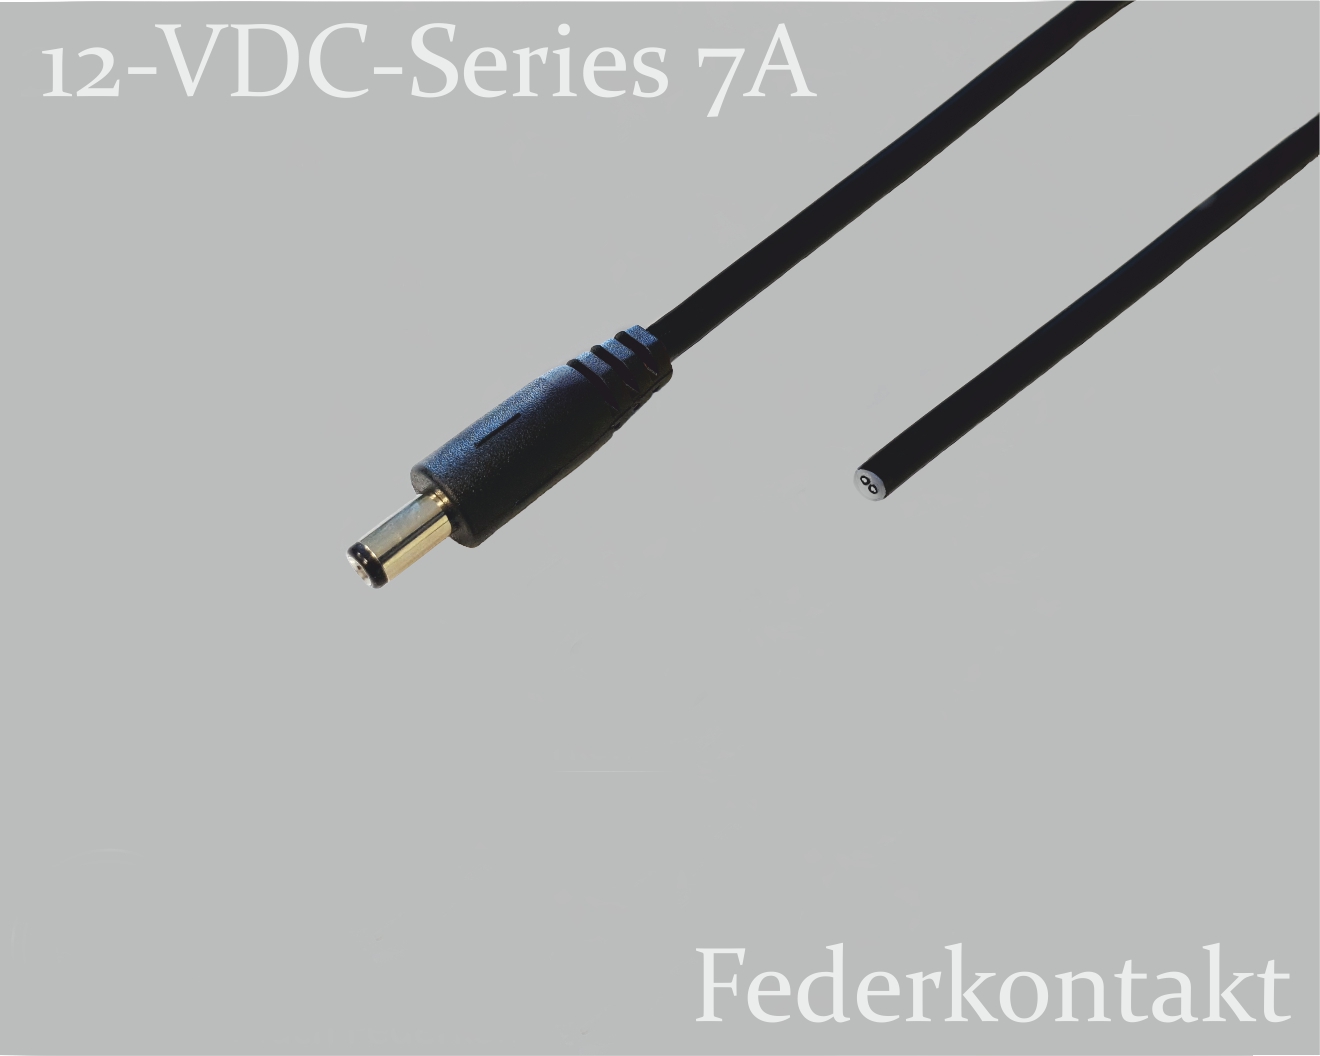 12-VDC-Series DC-Anschlusskabel, DC-Stecker mit Federkontakt 1,7x4mm auf offenes Ende, Rundkabel 2x0,5mm², schwarz, ca. 2m, glatt abgeschnitten